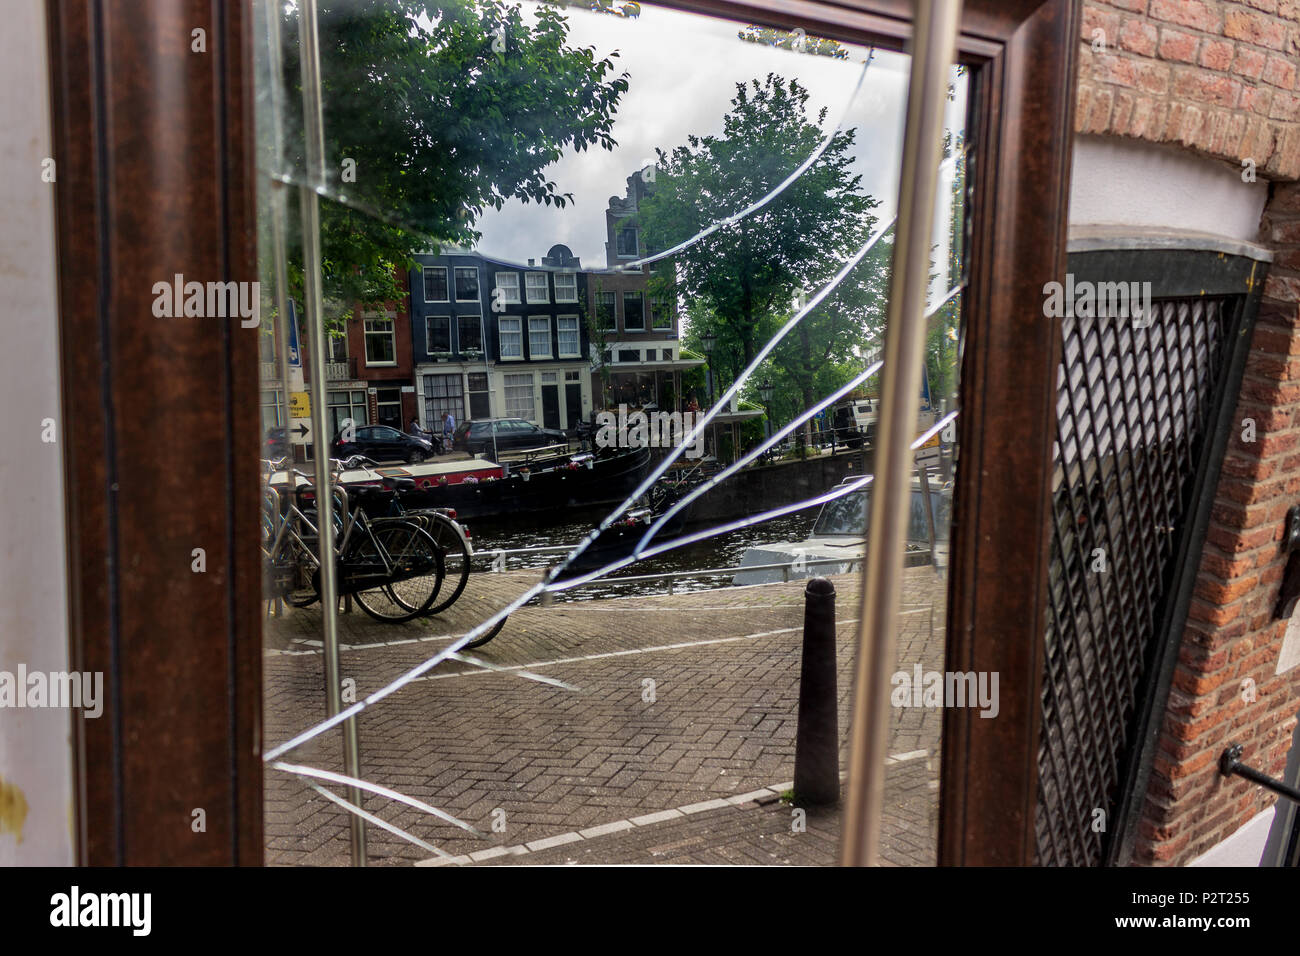 Un scartato specchio rotto riflette ancora un idilliaco paesaggio di una casa galleggiante, case e biciclette fodera un canale di Amsterdam, Paesi Bassi. Foto Stock